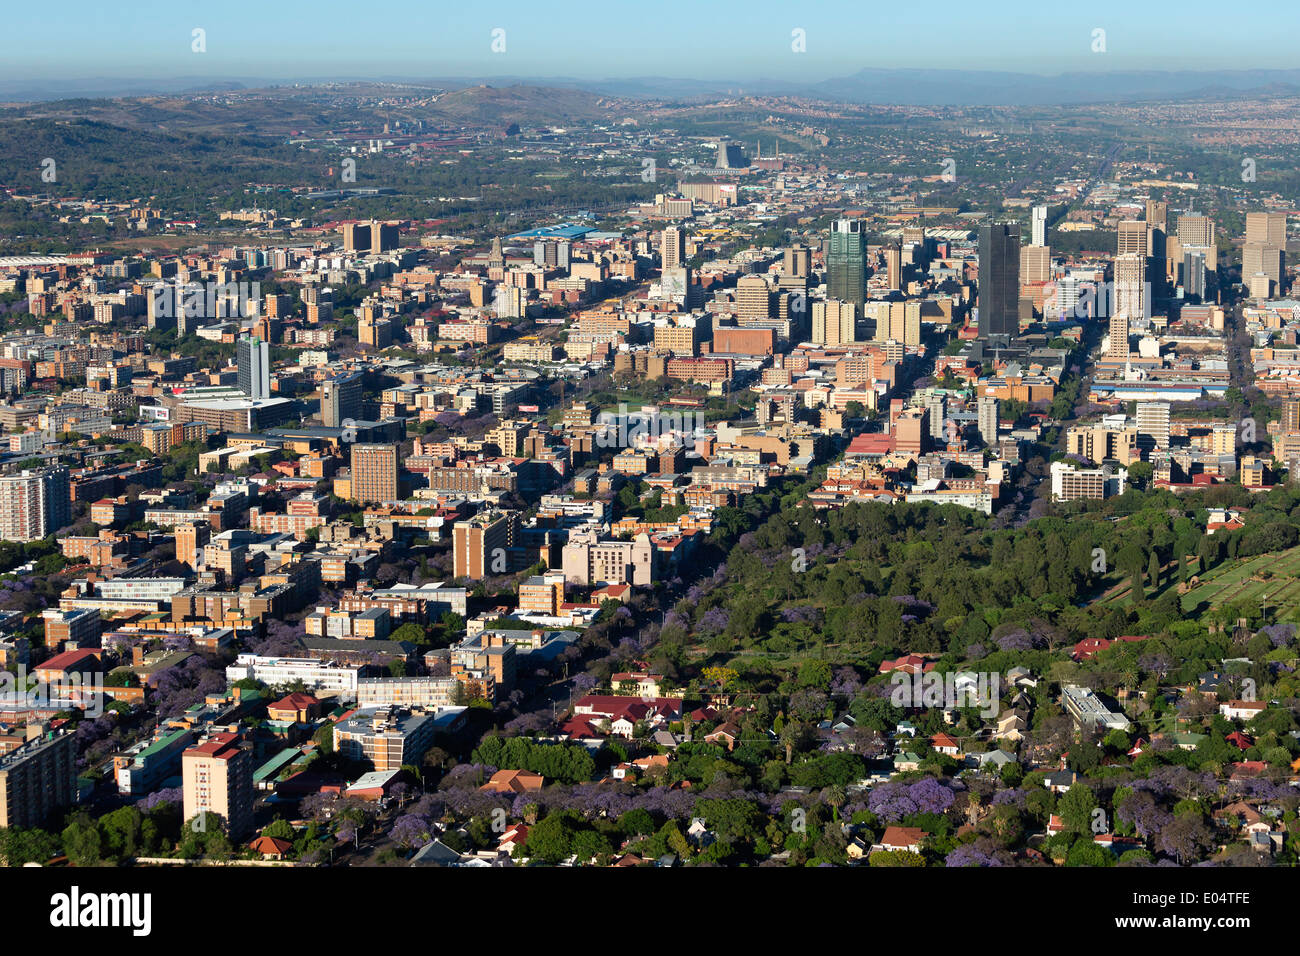 Vista aérea de Pretoria céntrica del distrito de negocios y la icónica jacarandas en flor.Pretoria, Sudáfrica. Foto de stock